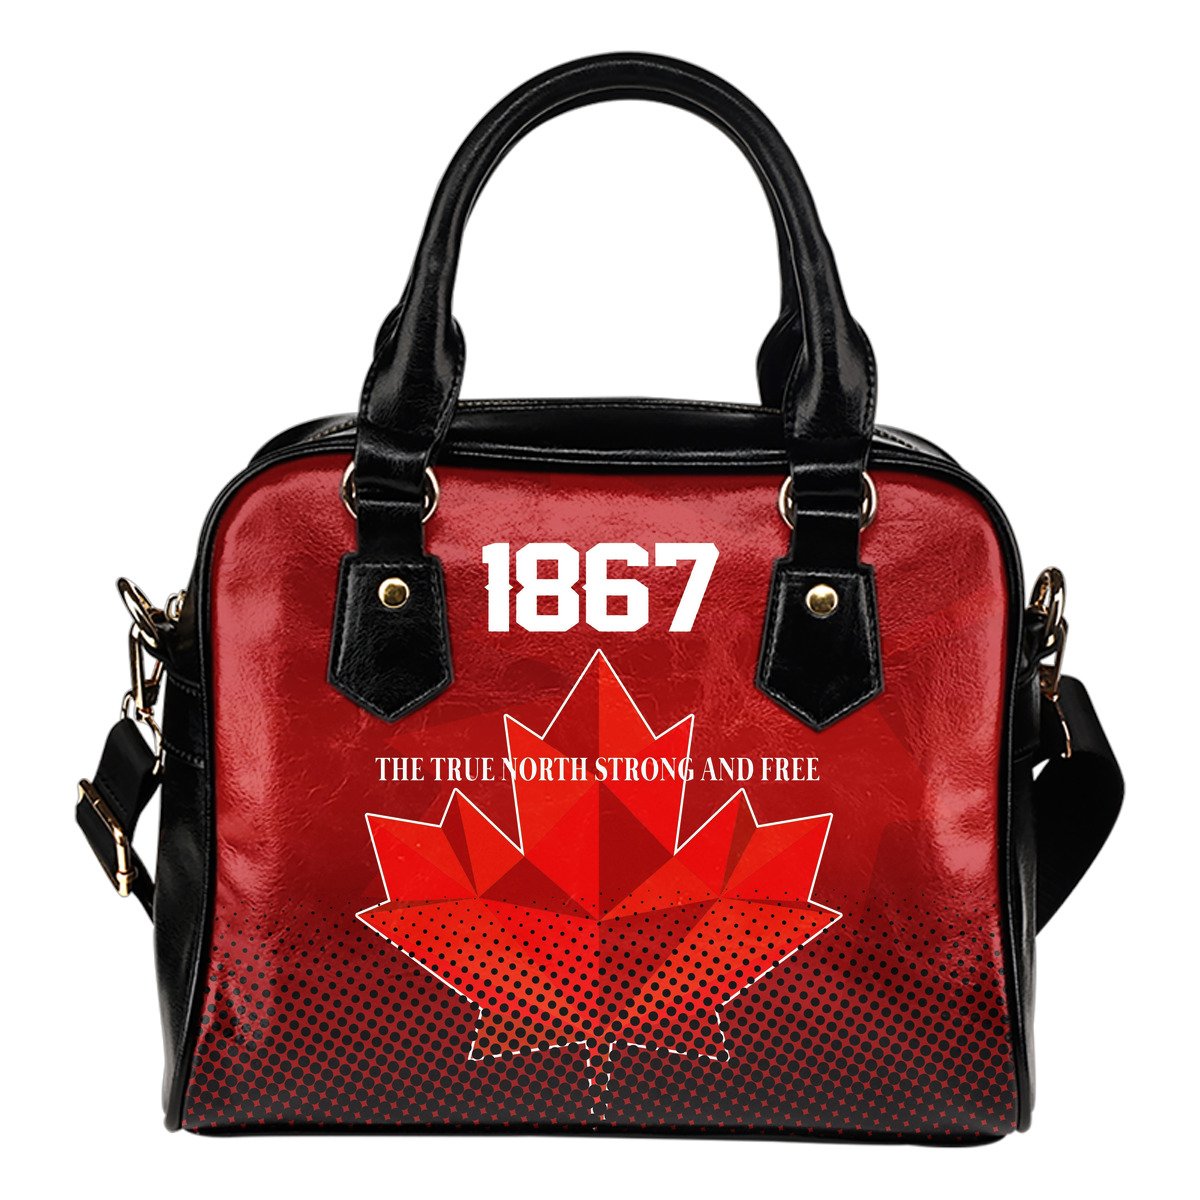 canada-day-since-1867-shoulder-handbag